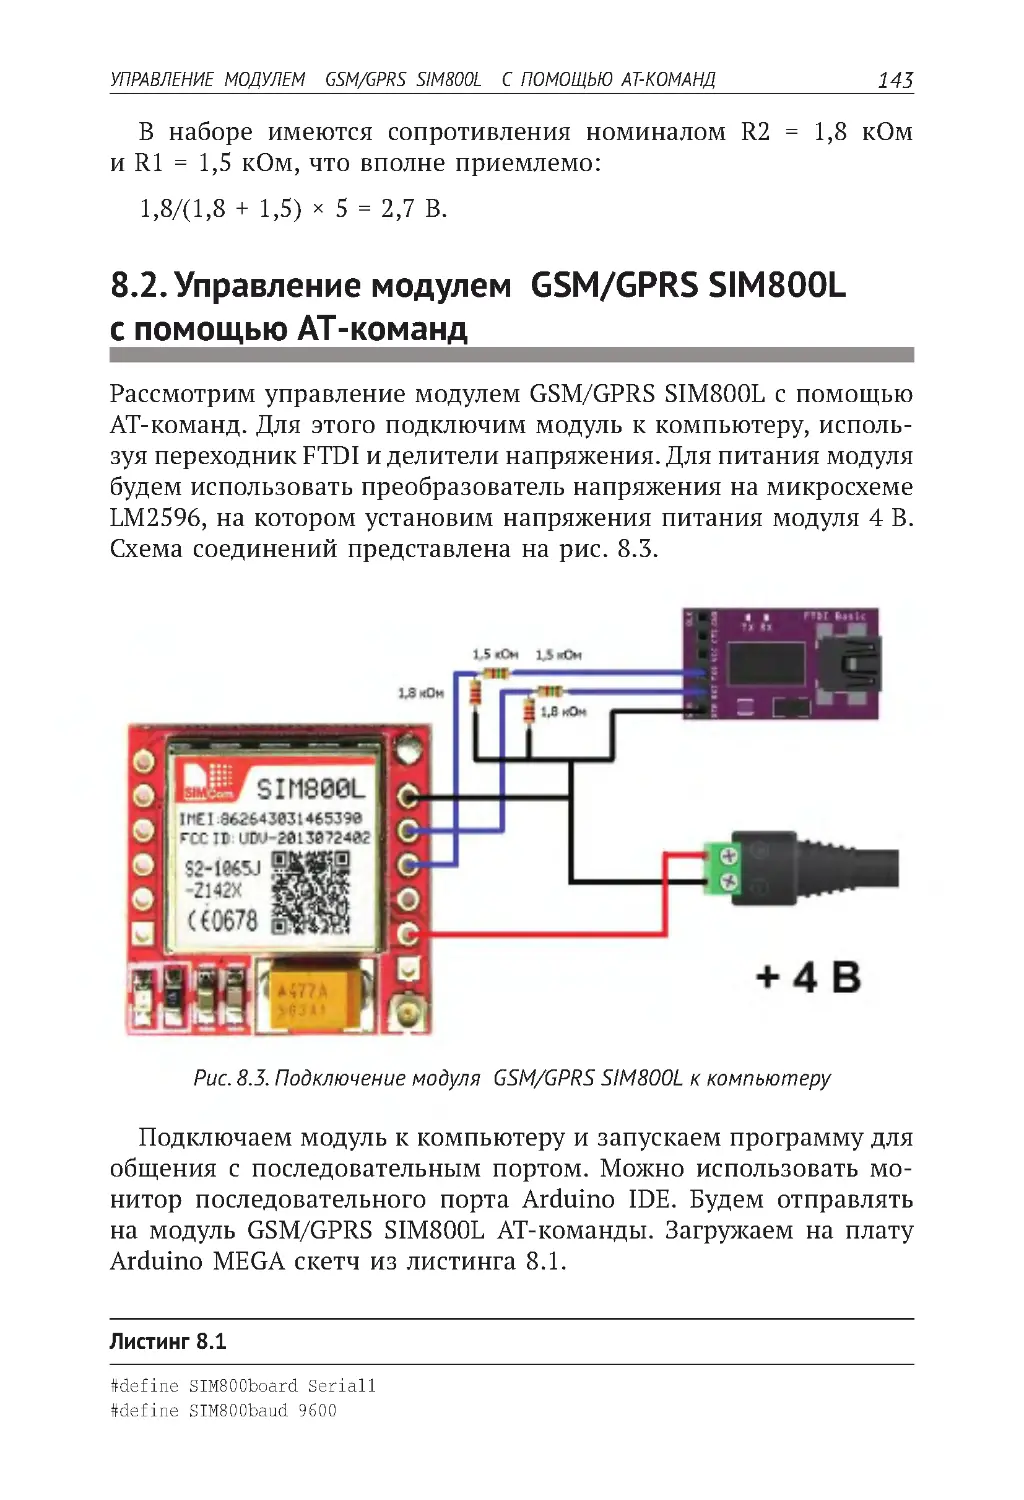 8.2. Управление модулем  GSM/GPRS SIM800L  с помощью AT-команд